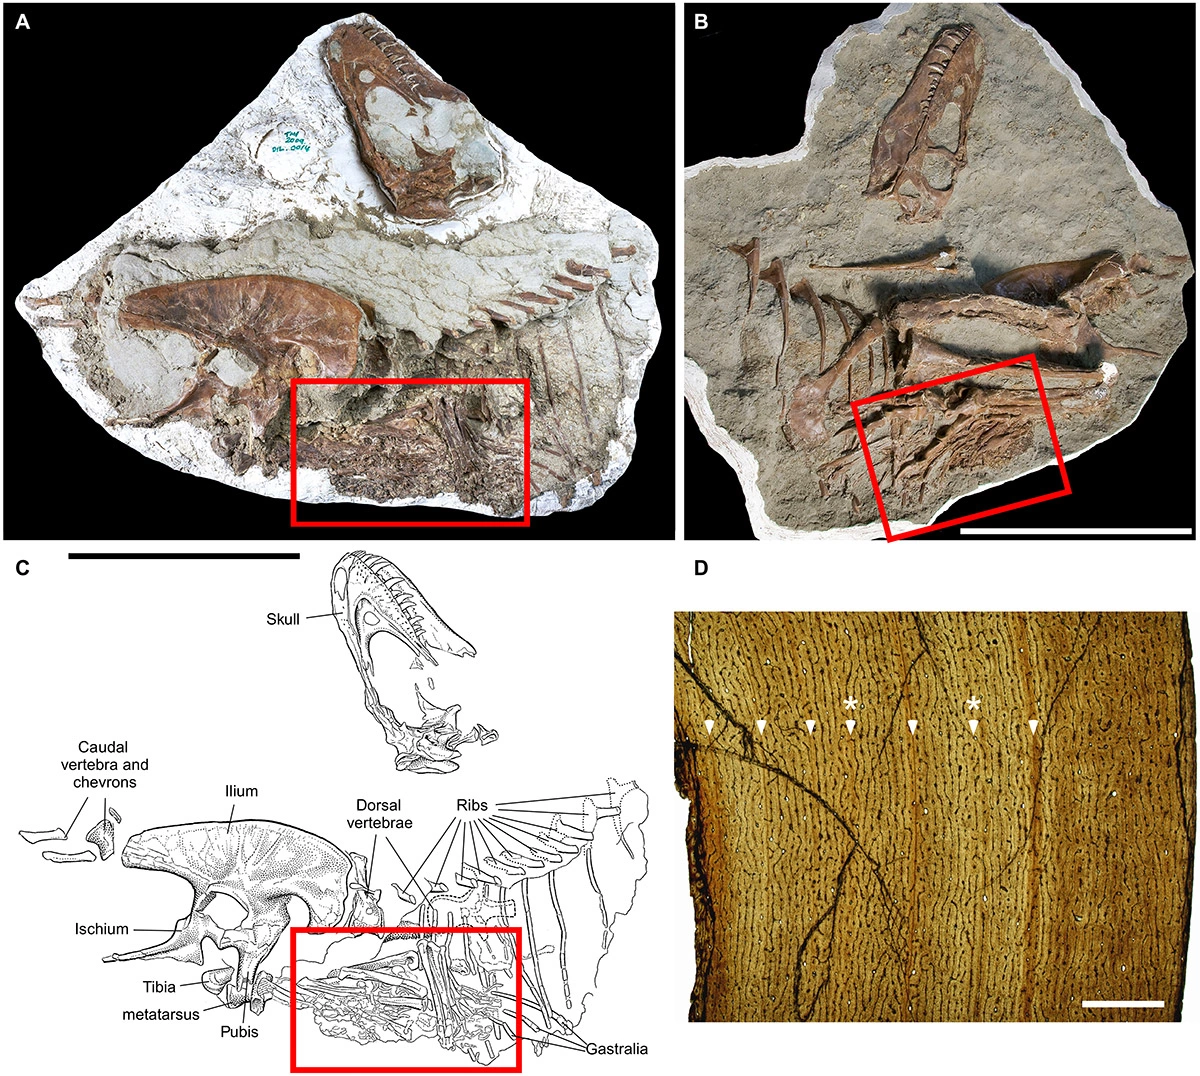 <p><br />
Содержимое желудка тираннозавра и укрупненный снимок останков детенышей</p>